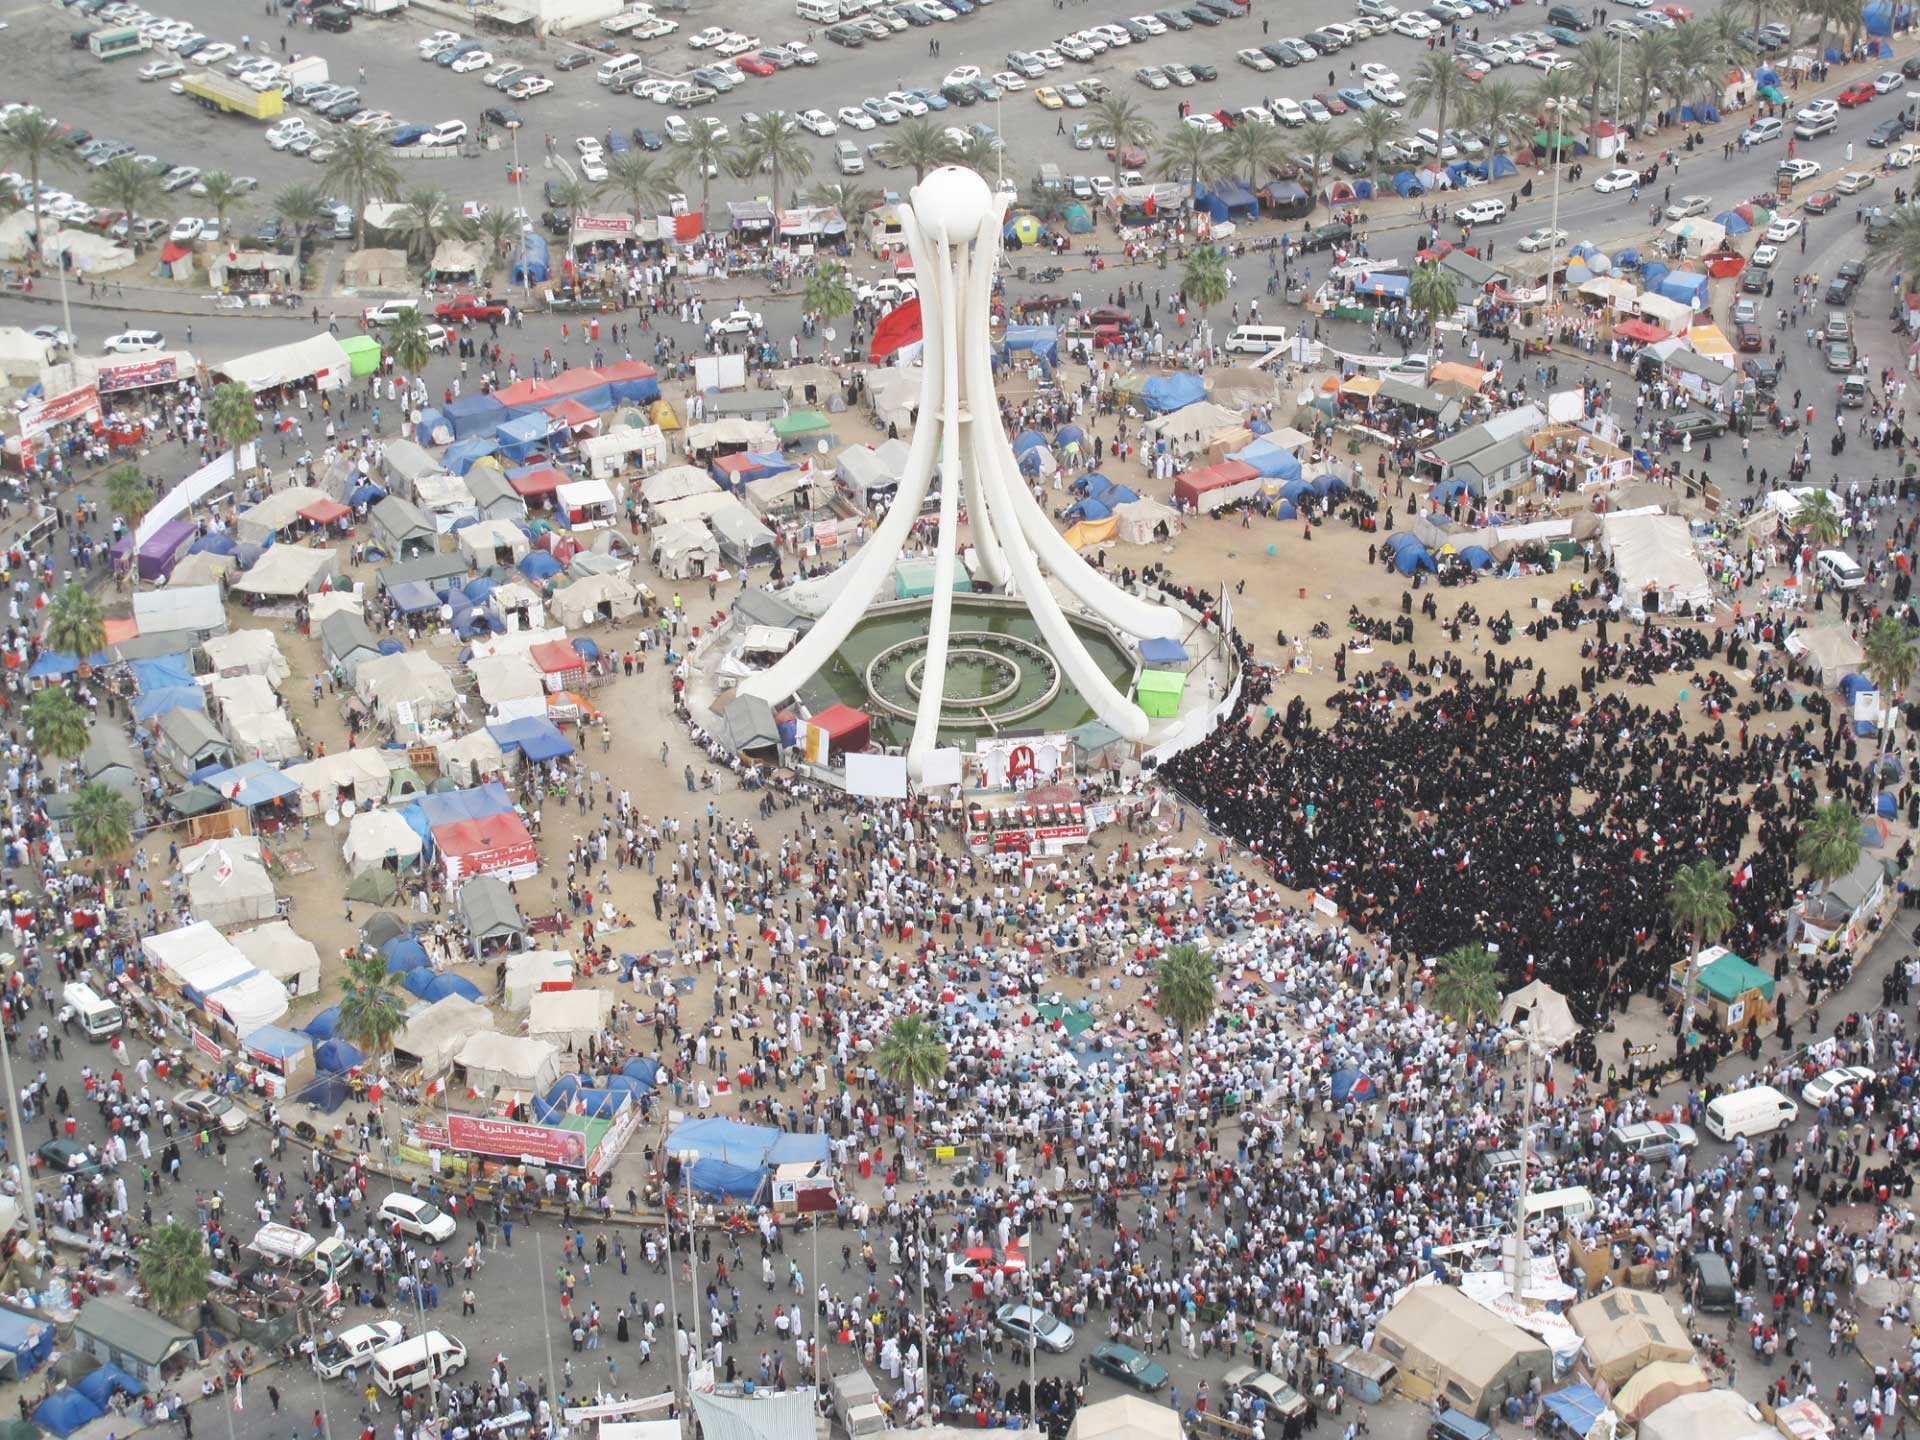 Der Kreisverkehr mit der großen Perlenskulptur bildete das Zentrum der etwa einen Monat andauernden Konflikte in Bahrain, die als lokale Reaktion auf die Ereignisse des Arabischen Frühlings in Tunesien und Ägypten begannen.